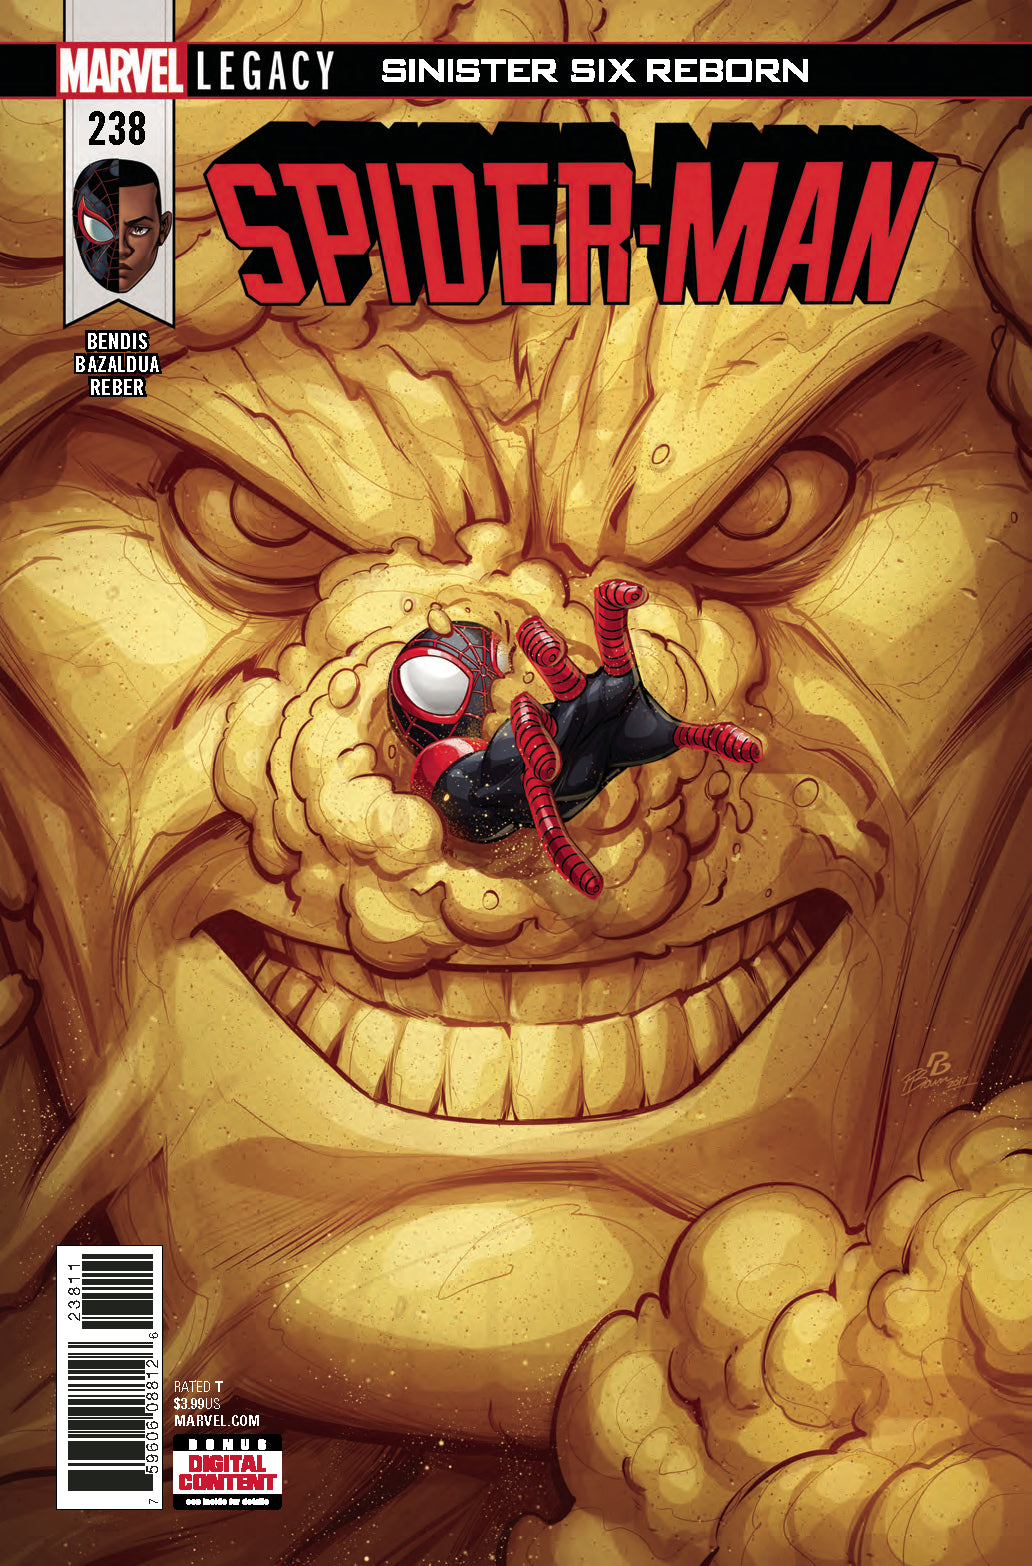 Spider-Man Sinister Six Reborn 6 Part Series